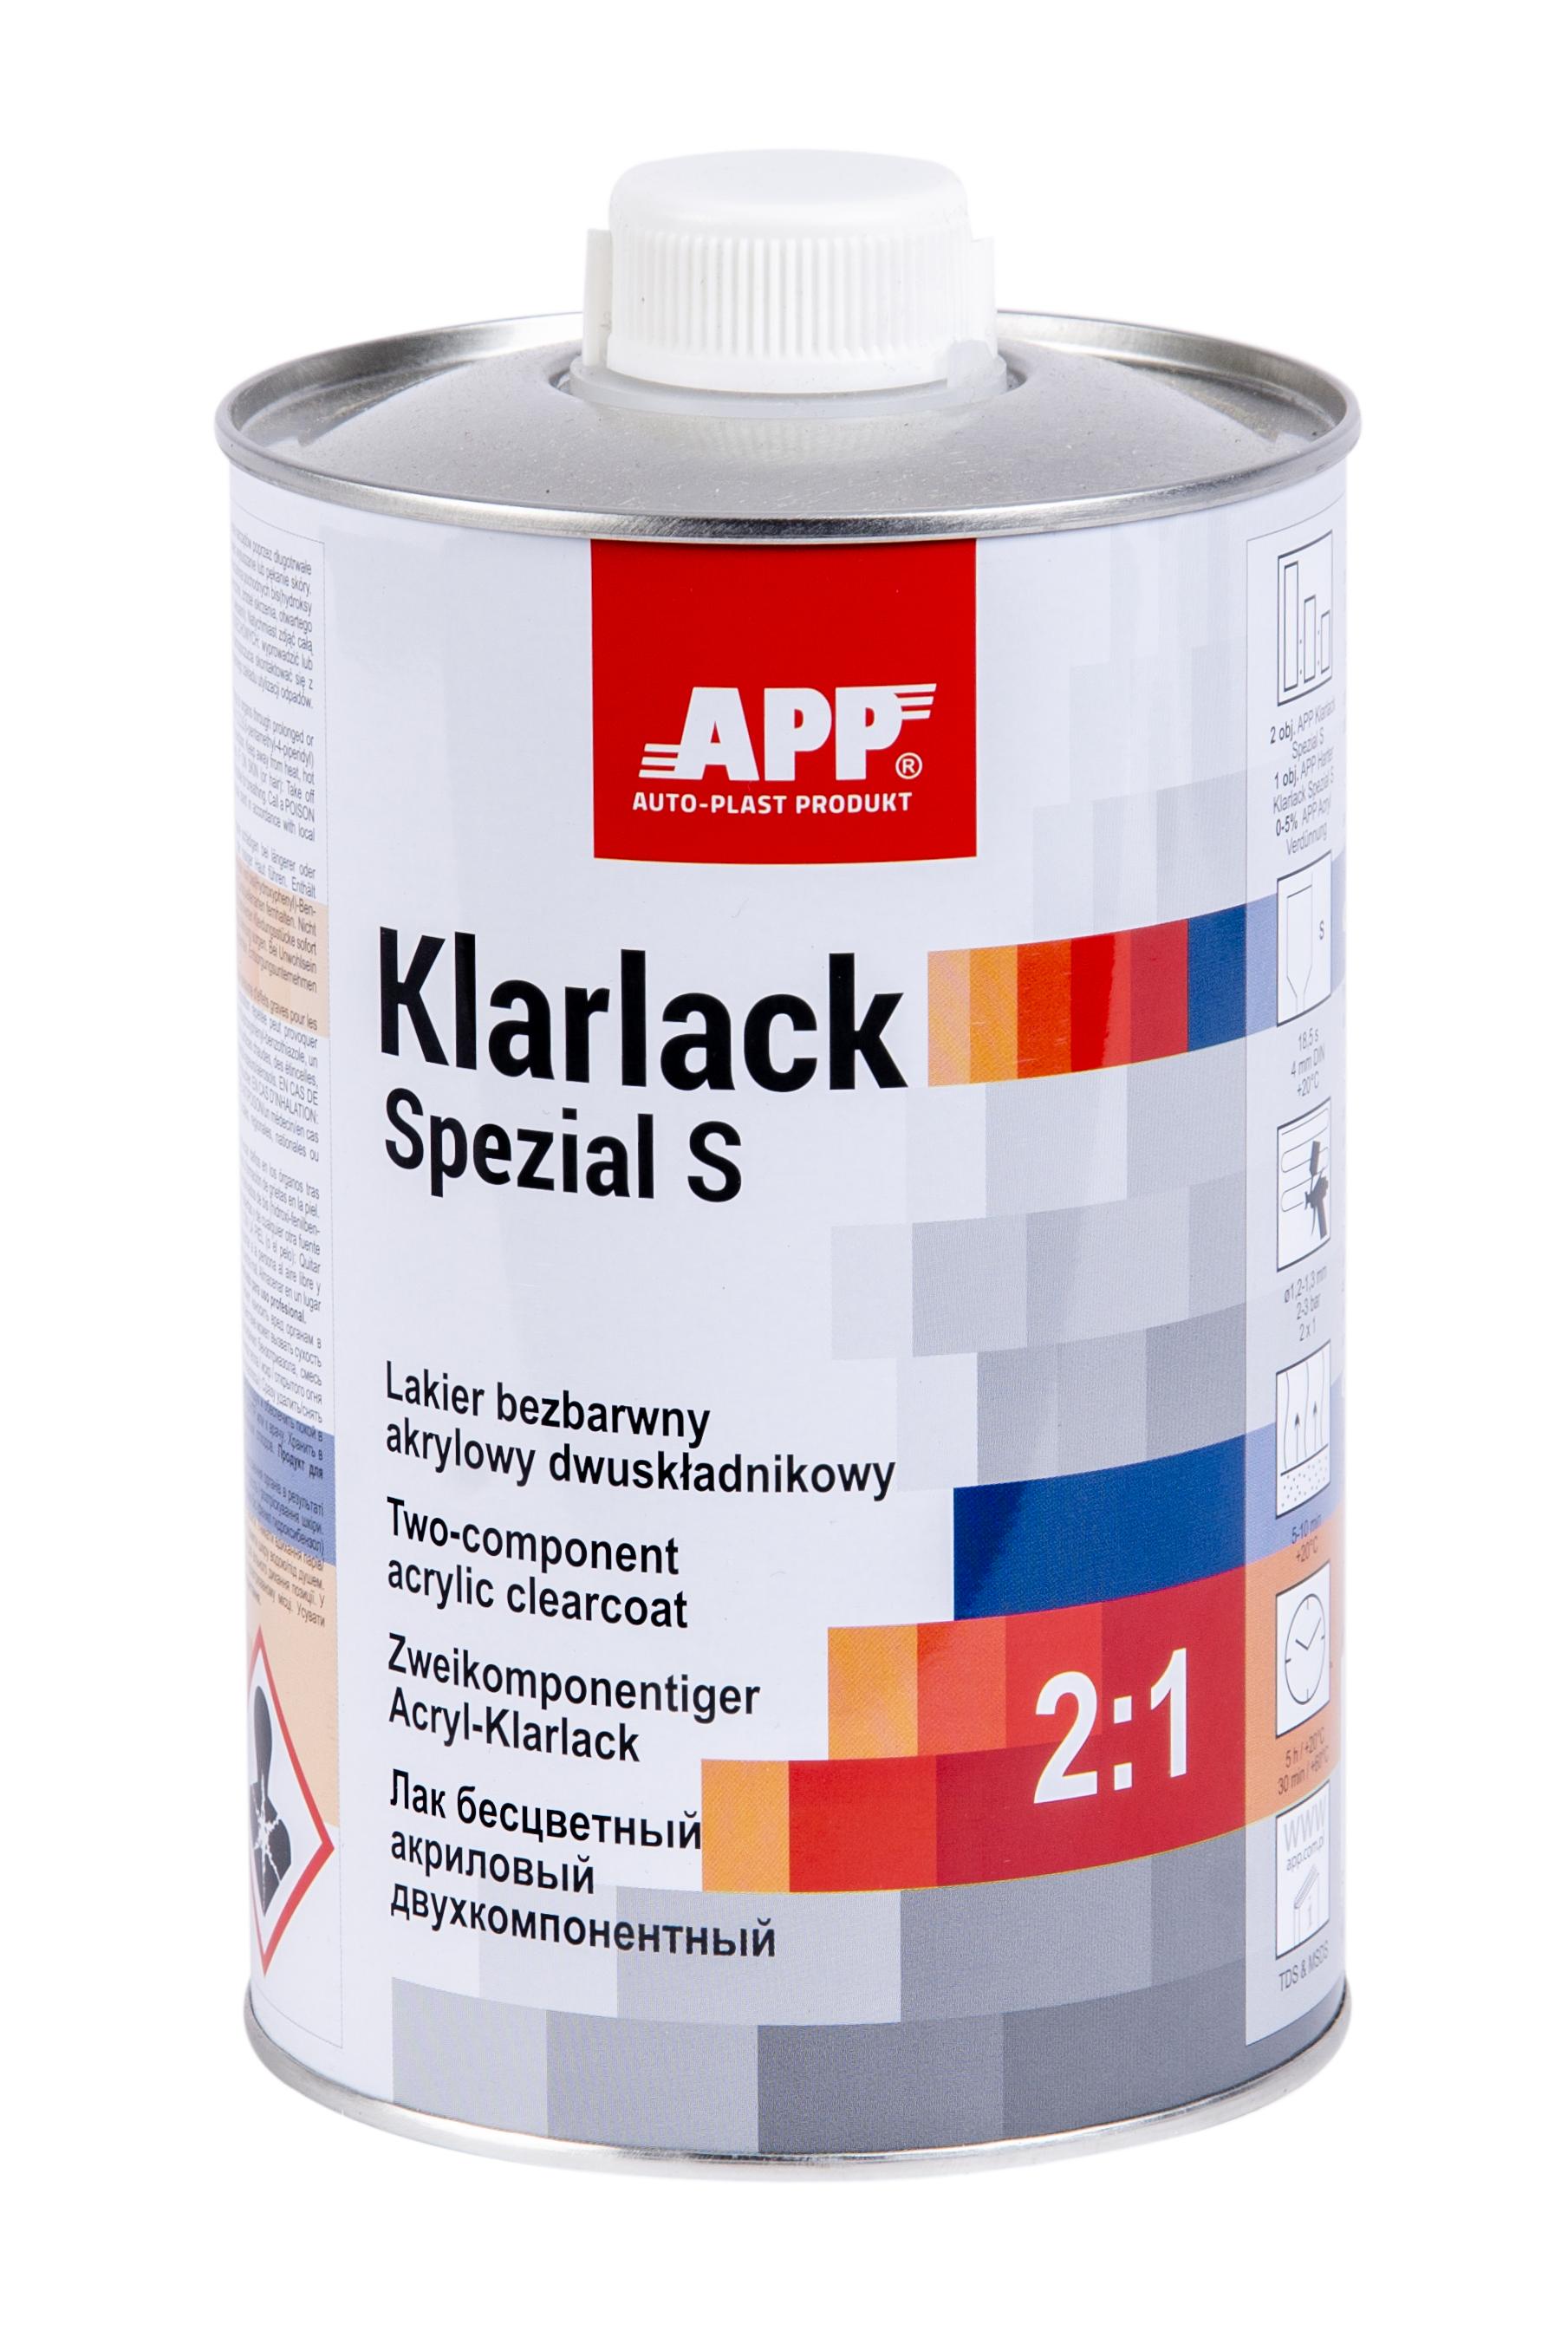 APP 020109 HS Acryl Klarlack Spezial S 2:1 kratzfest 1,0 L | Clearcoat Lack transparent 2K-Klarlack Acrylklarlack